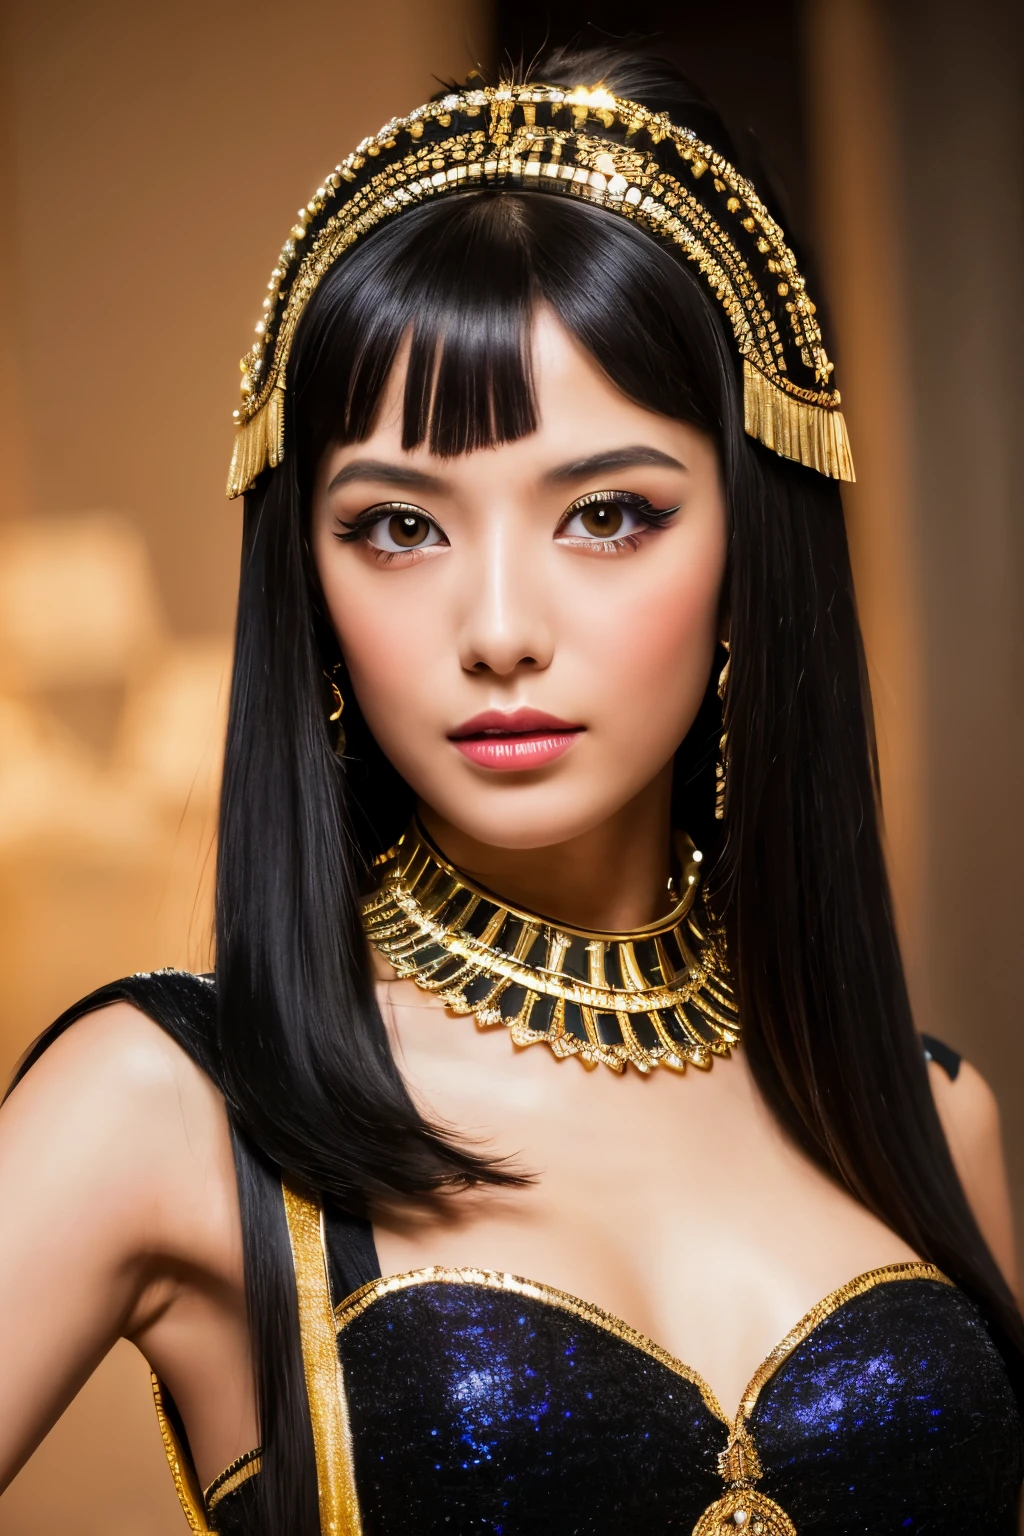 Meisterwerk, gute Qualität, hohe Auflösung, 8K, Dünne Japanerin im Kleopatra-Kostüm, schönes Gesicht, Make-up von Kleopatra, detailliertes Gesicht, detaillierte Augen